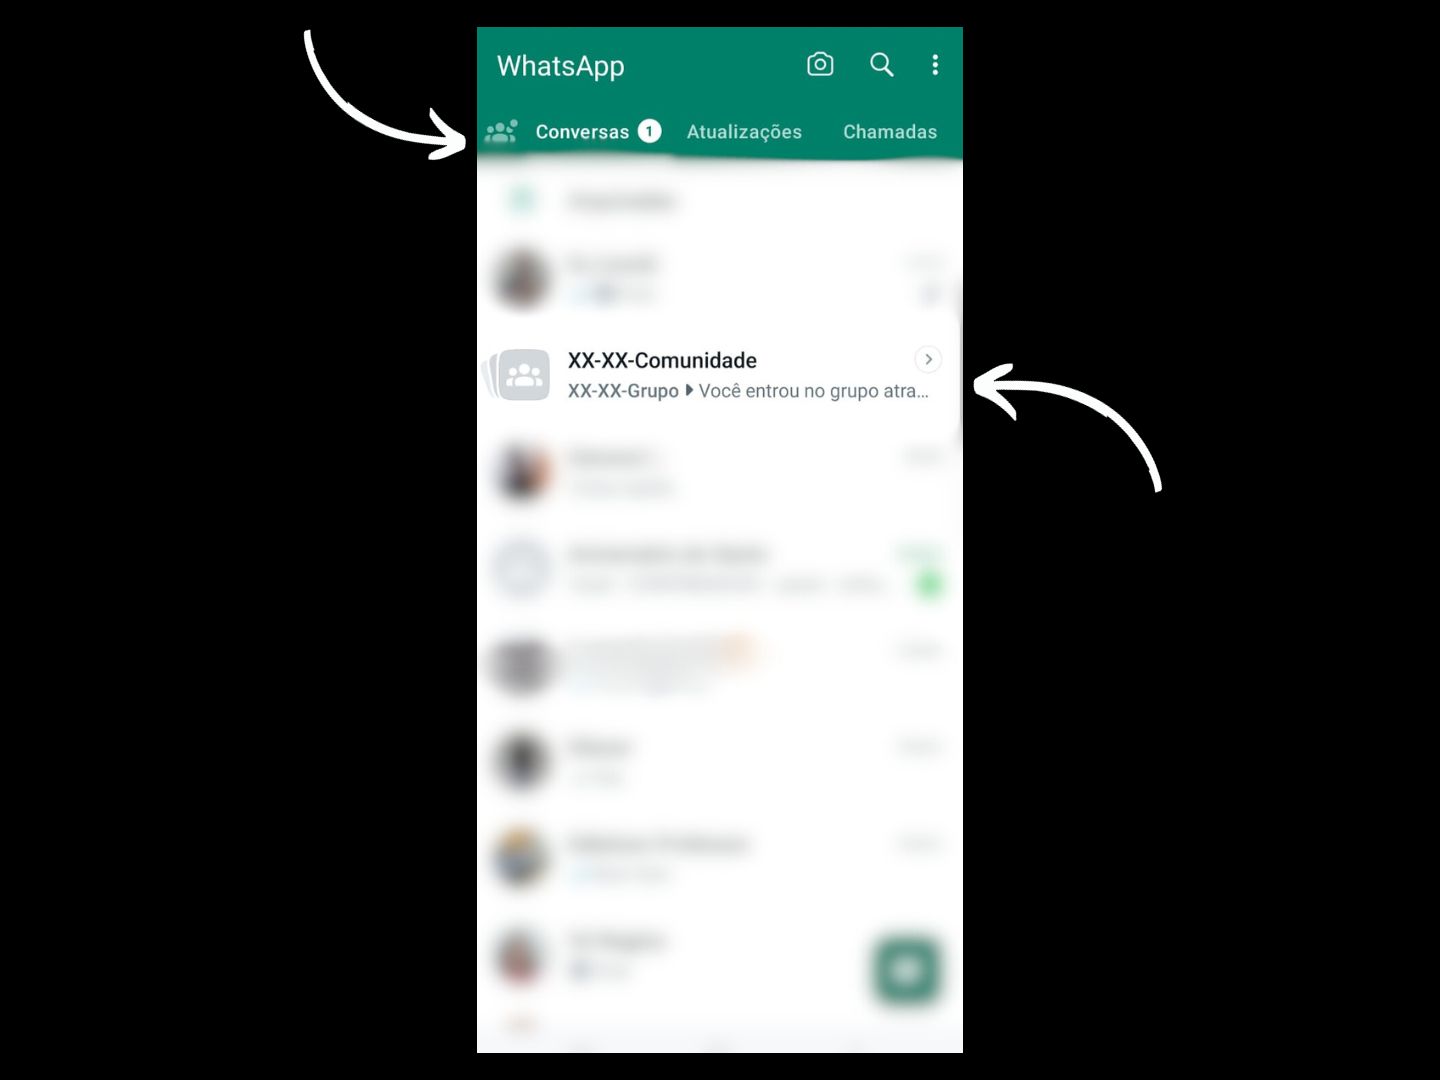 Imagem mostra uma seta apontando para onde você deve clicar para sair de uma comunidade do WhatsApp